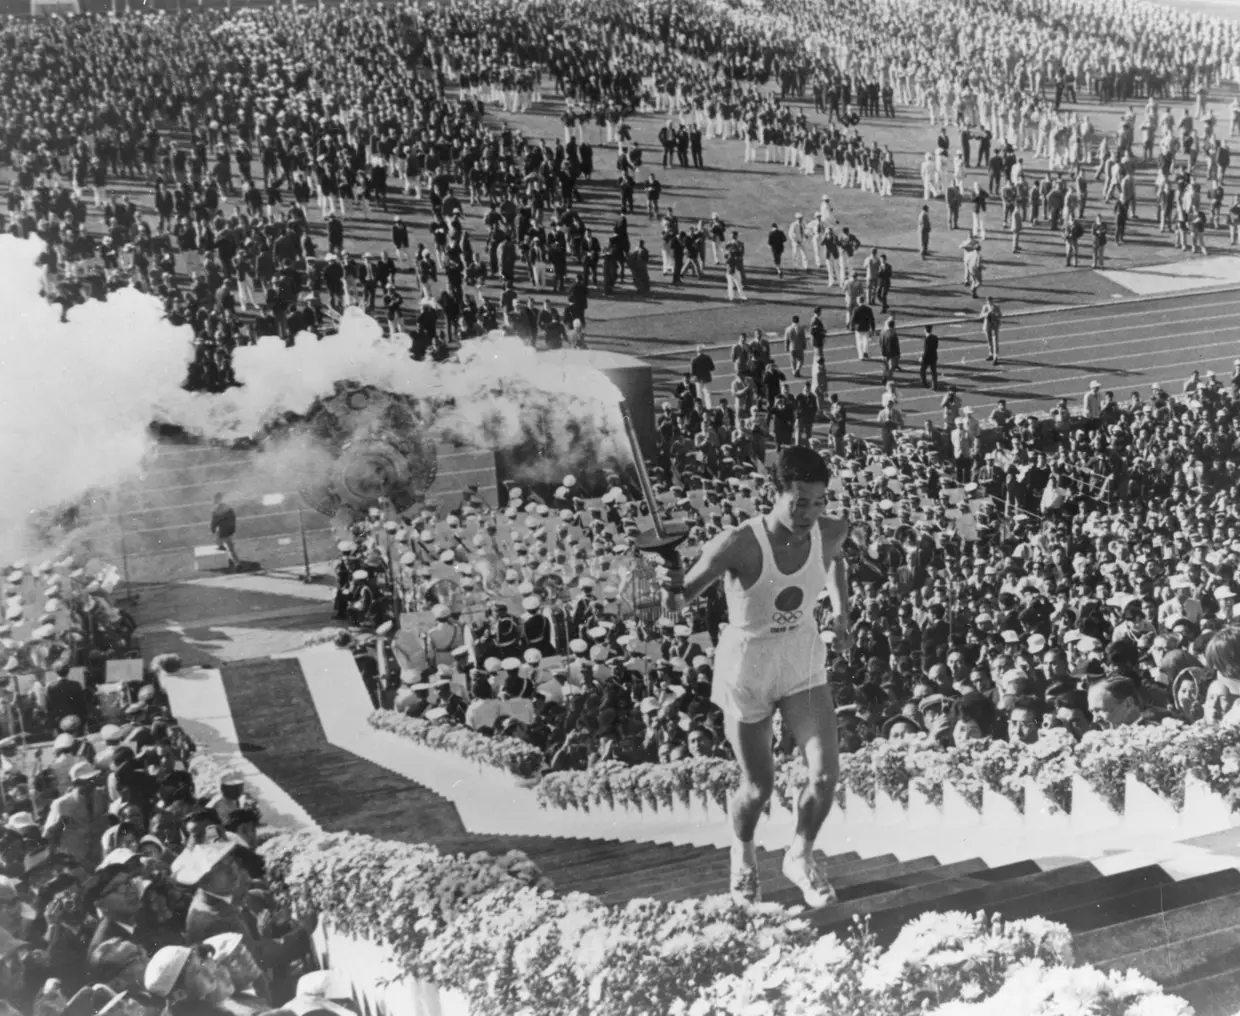 A tocha olímpica foi transportada por Yoshinori Sakai, o atleta que era conhecido como "bebé de Hiroshima", pois nasceu no dia em que a bomba atómica espalhou morte e miséria naquela cidade